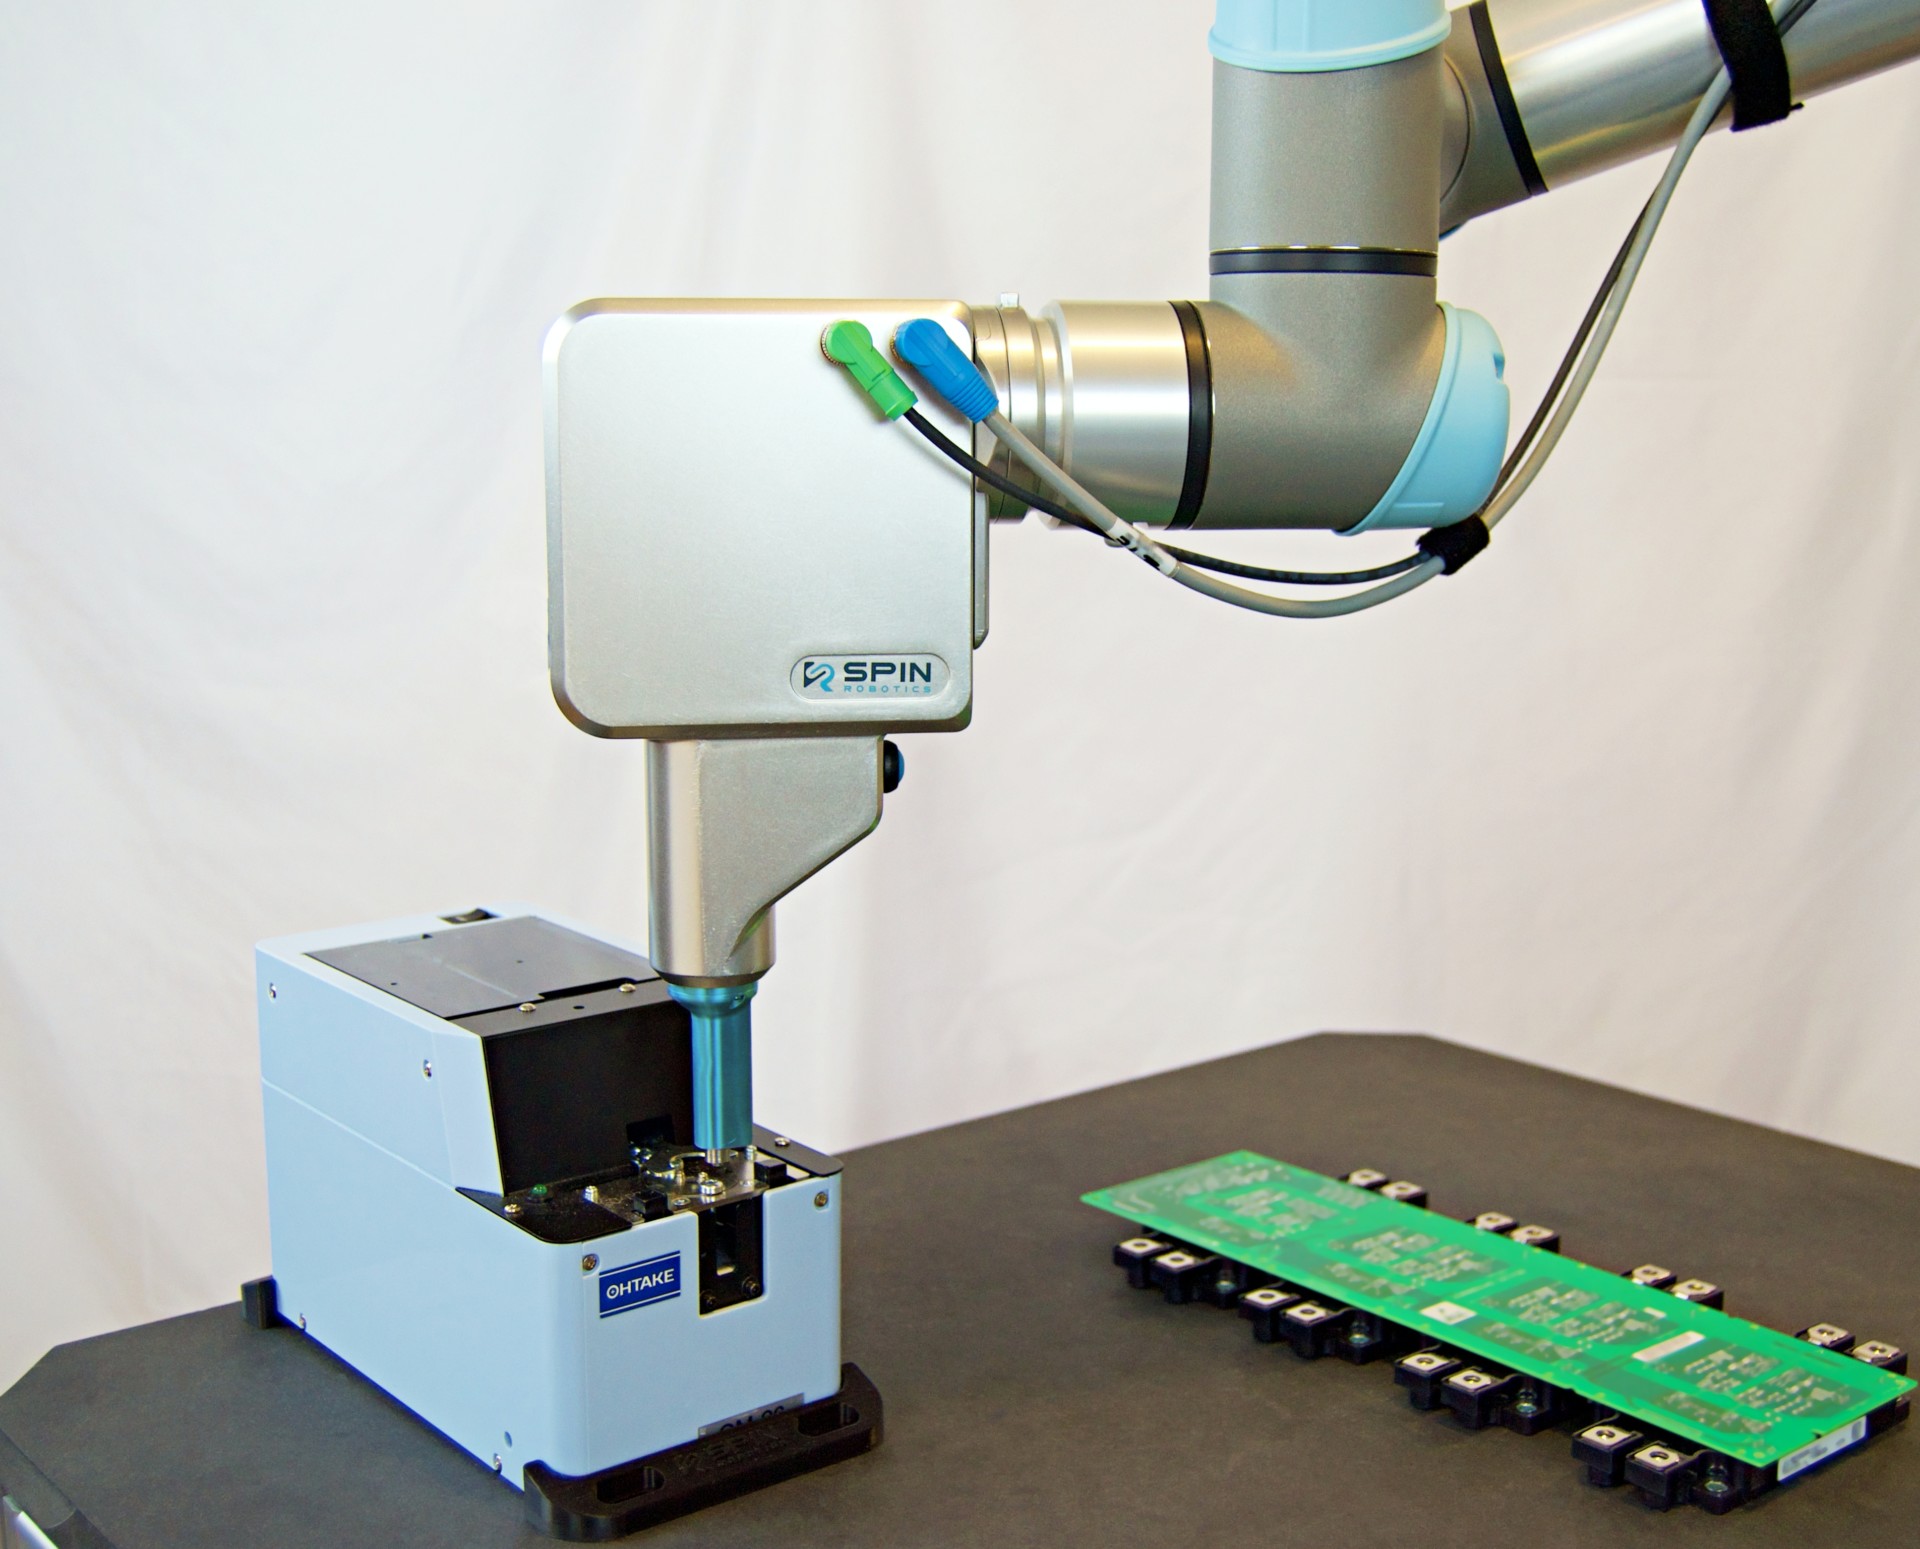 Spin robotics skrutkovanie s Universal robots